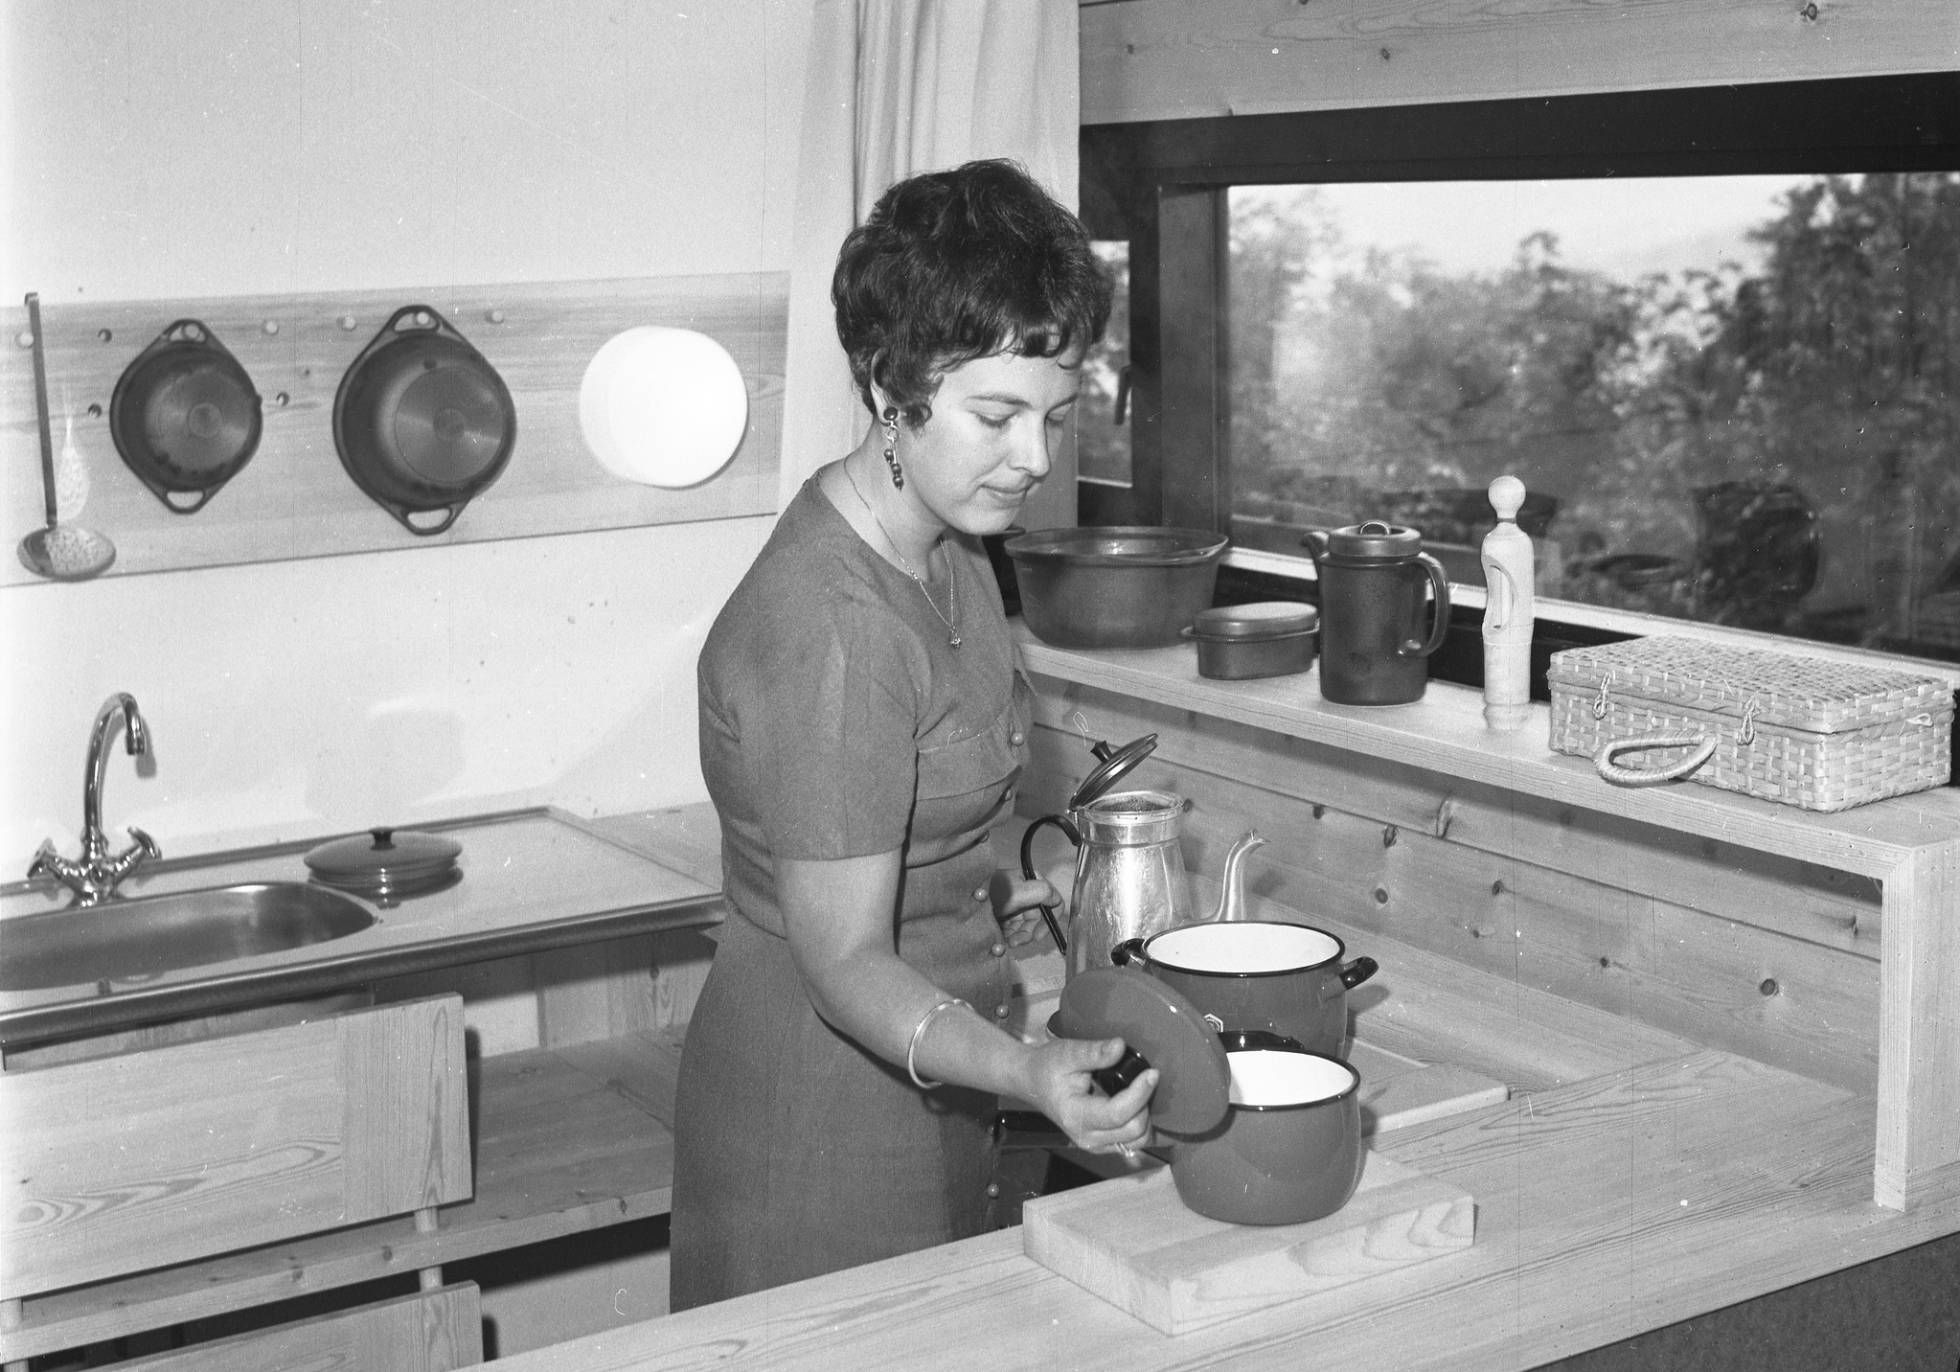 Si está en la cocina, es una mujer: cómo los algoritmos refuerzan los prejuicios